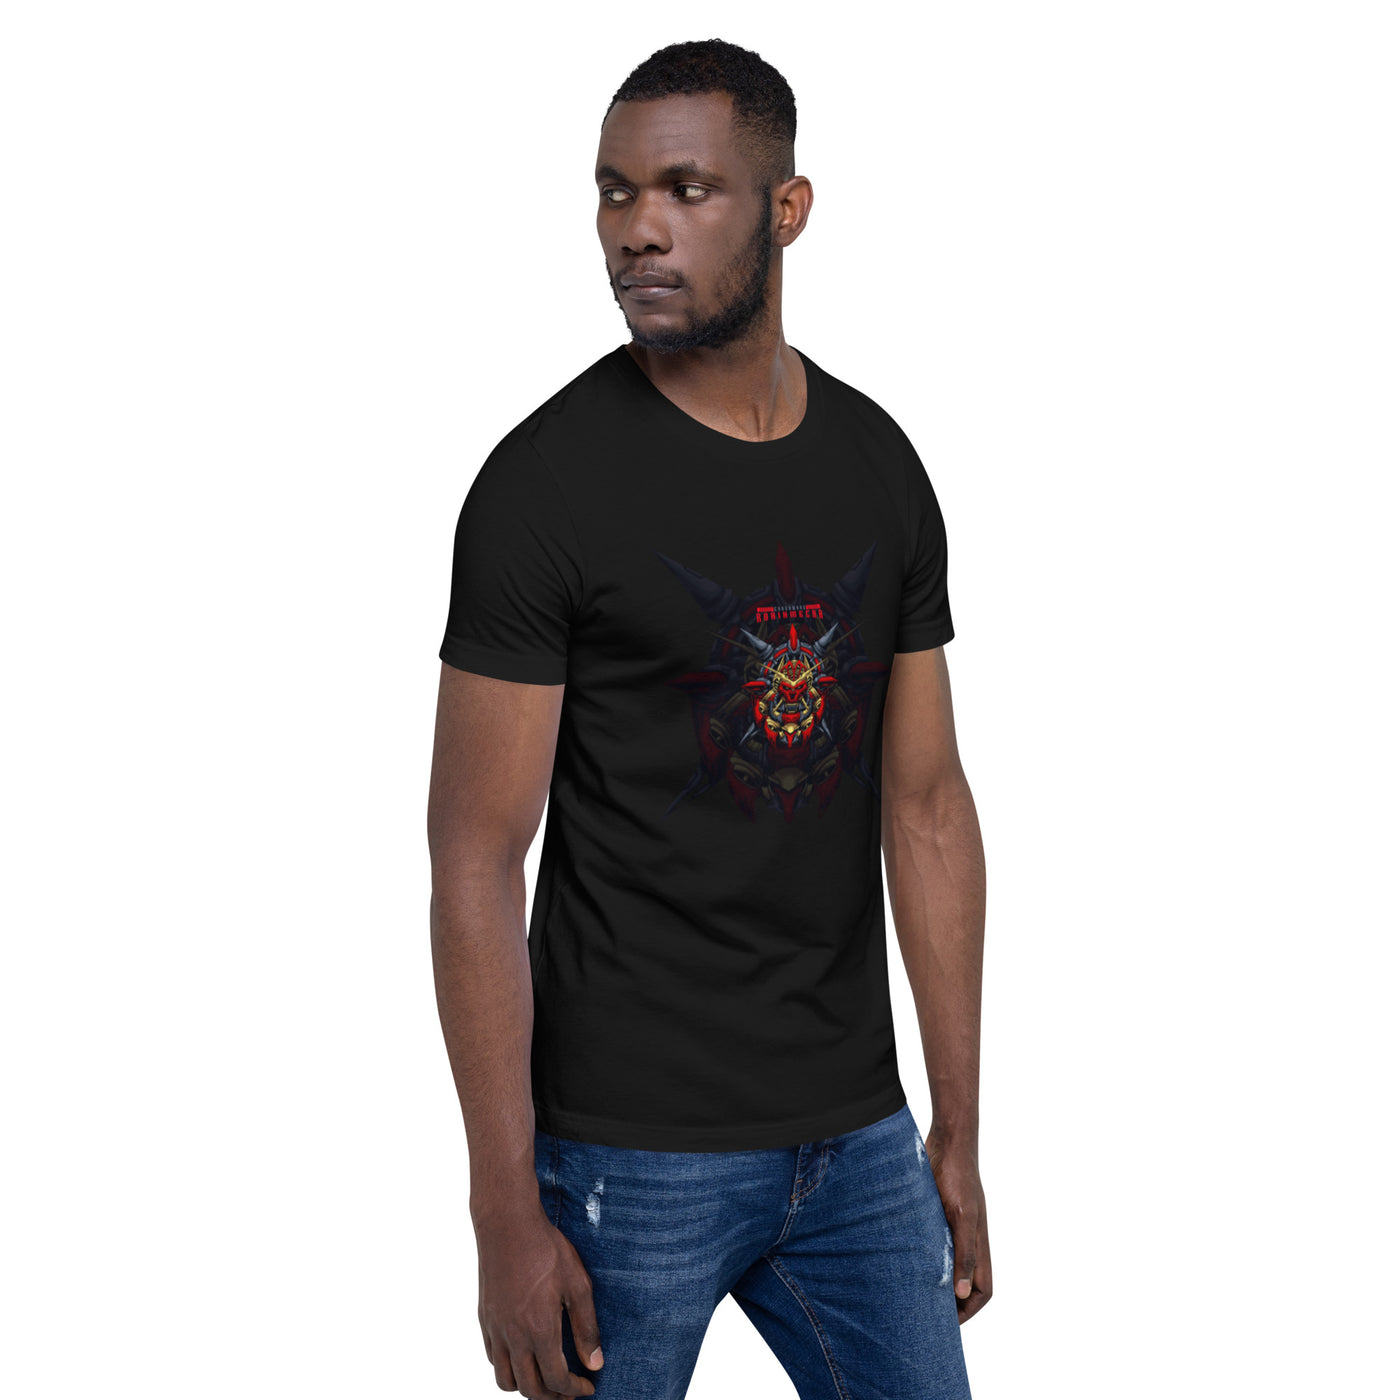 Cyberware Ronin Mecha - Unisex t-shirt